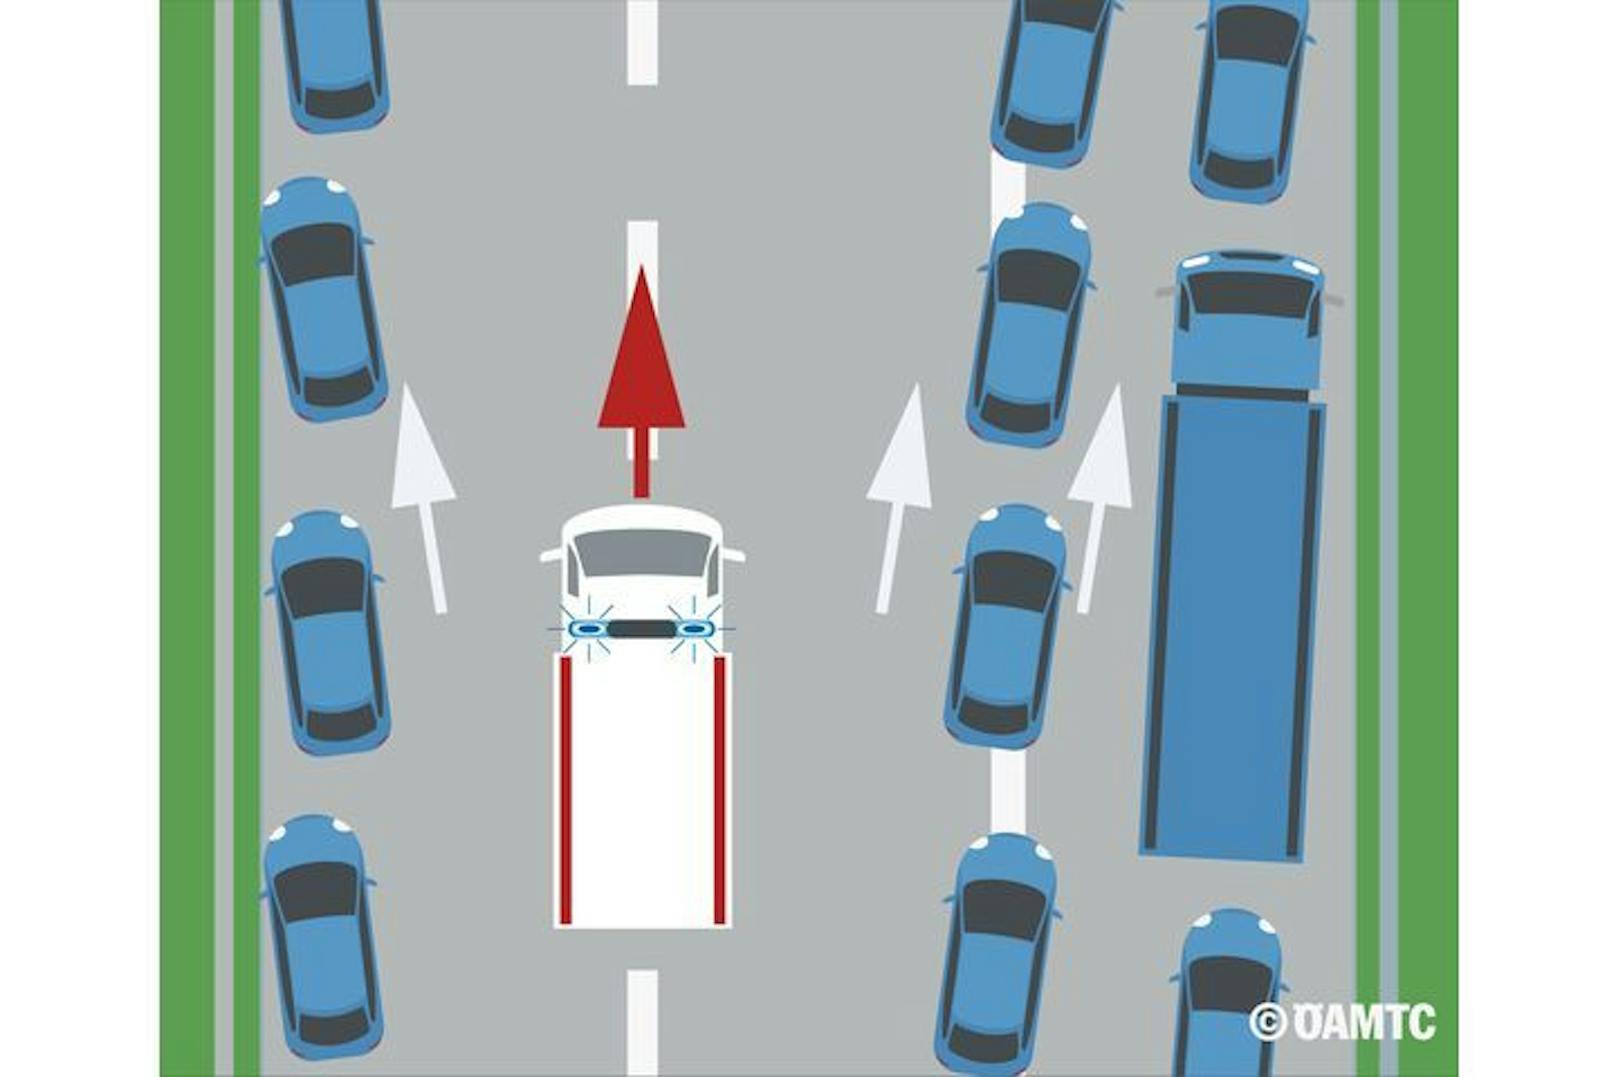 Wichtig: Im Falle eines Staus ist umgehend eine Rettungsgasse zu bilden. Fahrzeuge auf dem linken Fahrstreifen weichen nach links aus, ALLE anderen nach rechts.